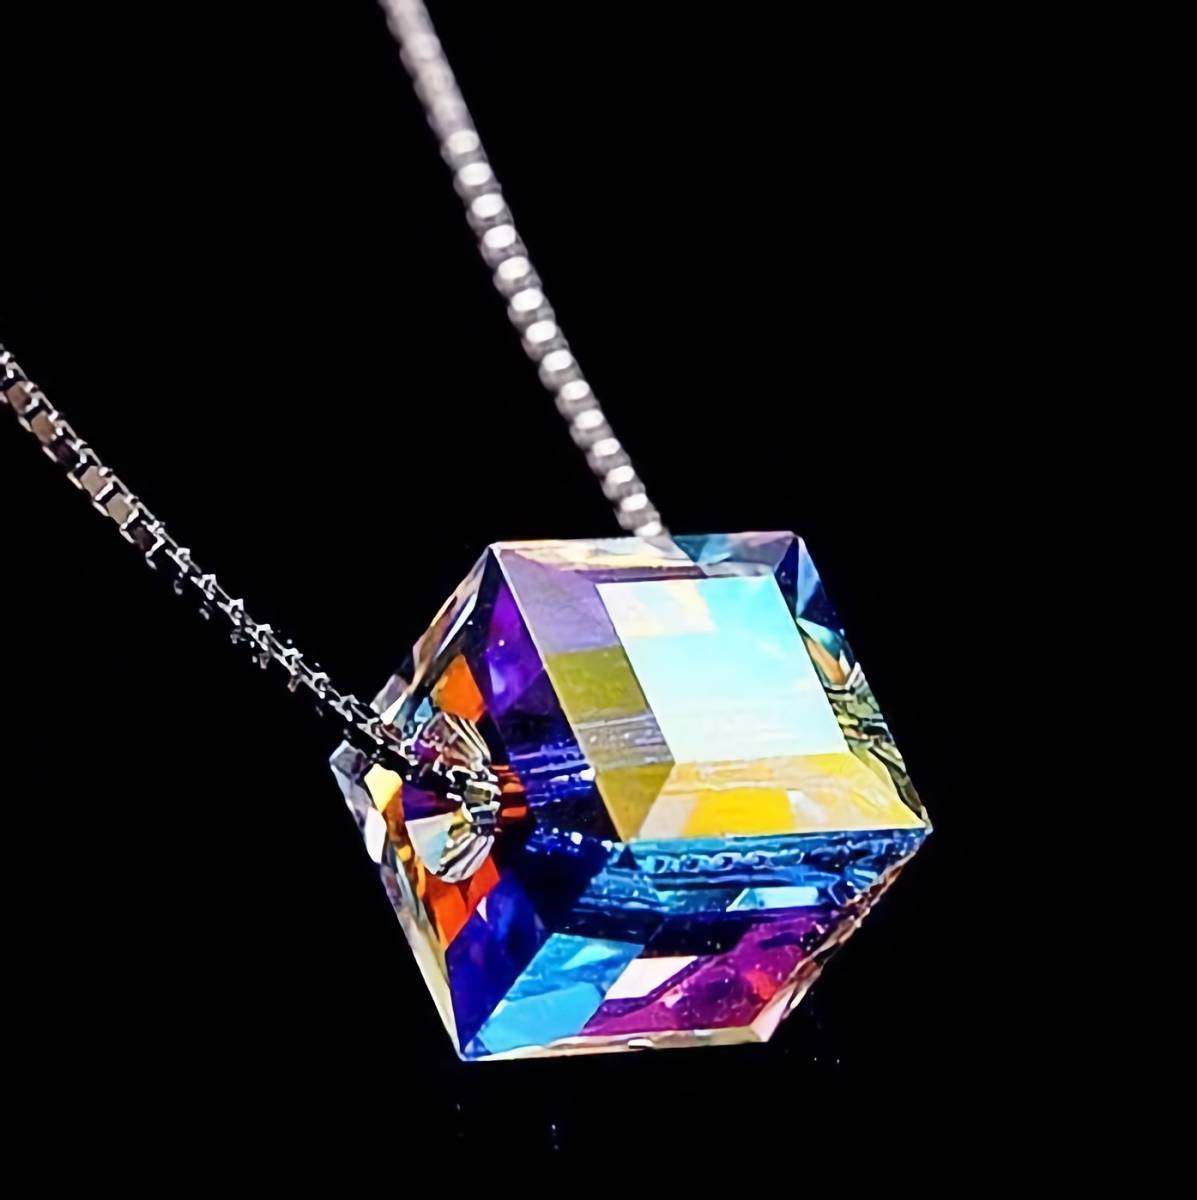  новый товар 1 иен ~* бесплатная доставка * радуга цвет Rainbow кристалл Cube платина отделка 925 серебряный подвеска день рождения подарок путешествие ряд выходных дней первый лето праздник фейерверк подарок доставка внутри страны 